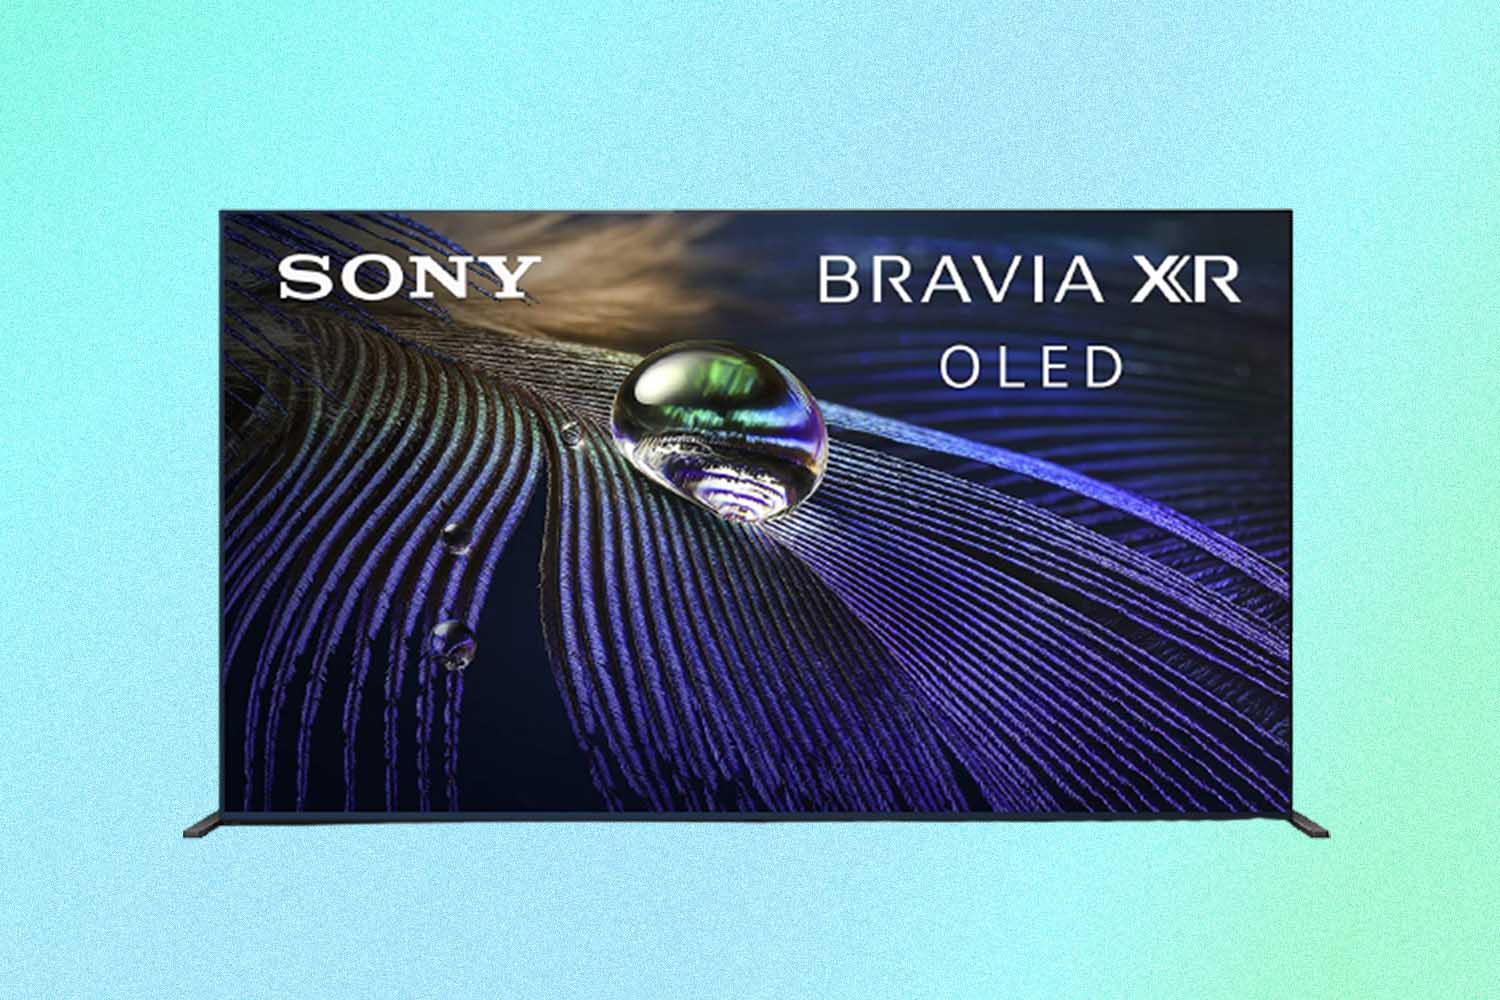 Sony A90J 55 Inch TV: BRAVIA XR